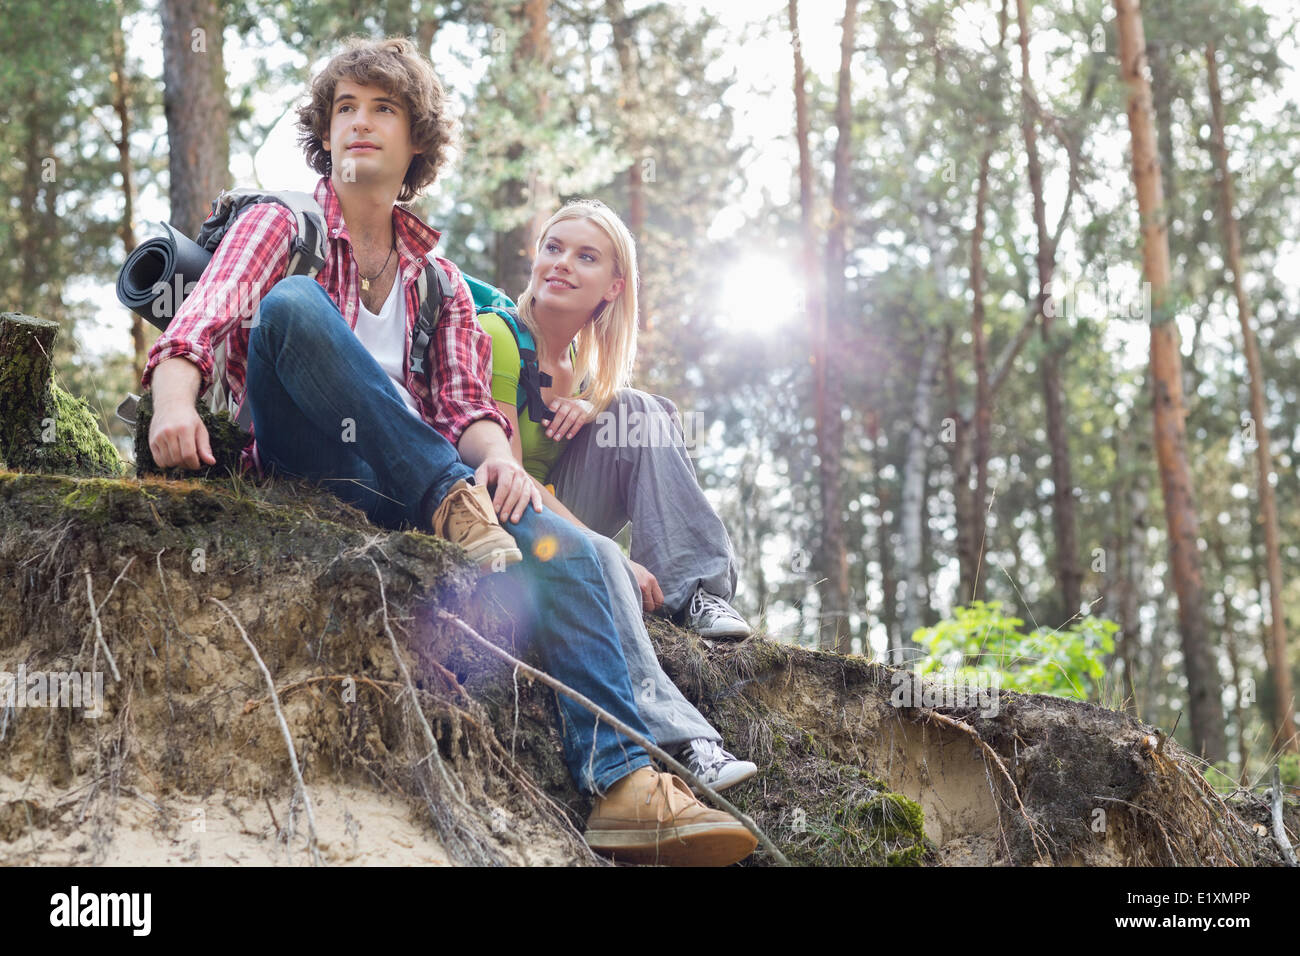 Junge Wandern Paar Sitzt Am Rand Der Klippe Im Wald Stockfotografie Alamy